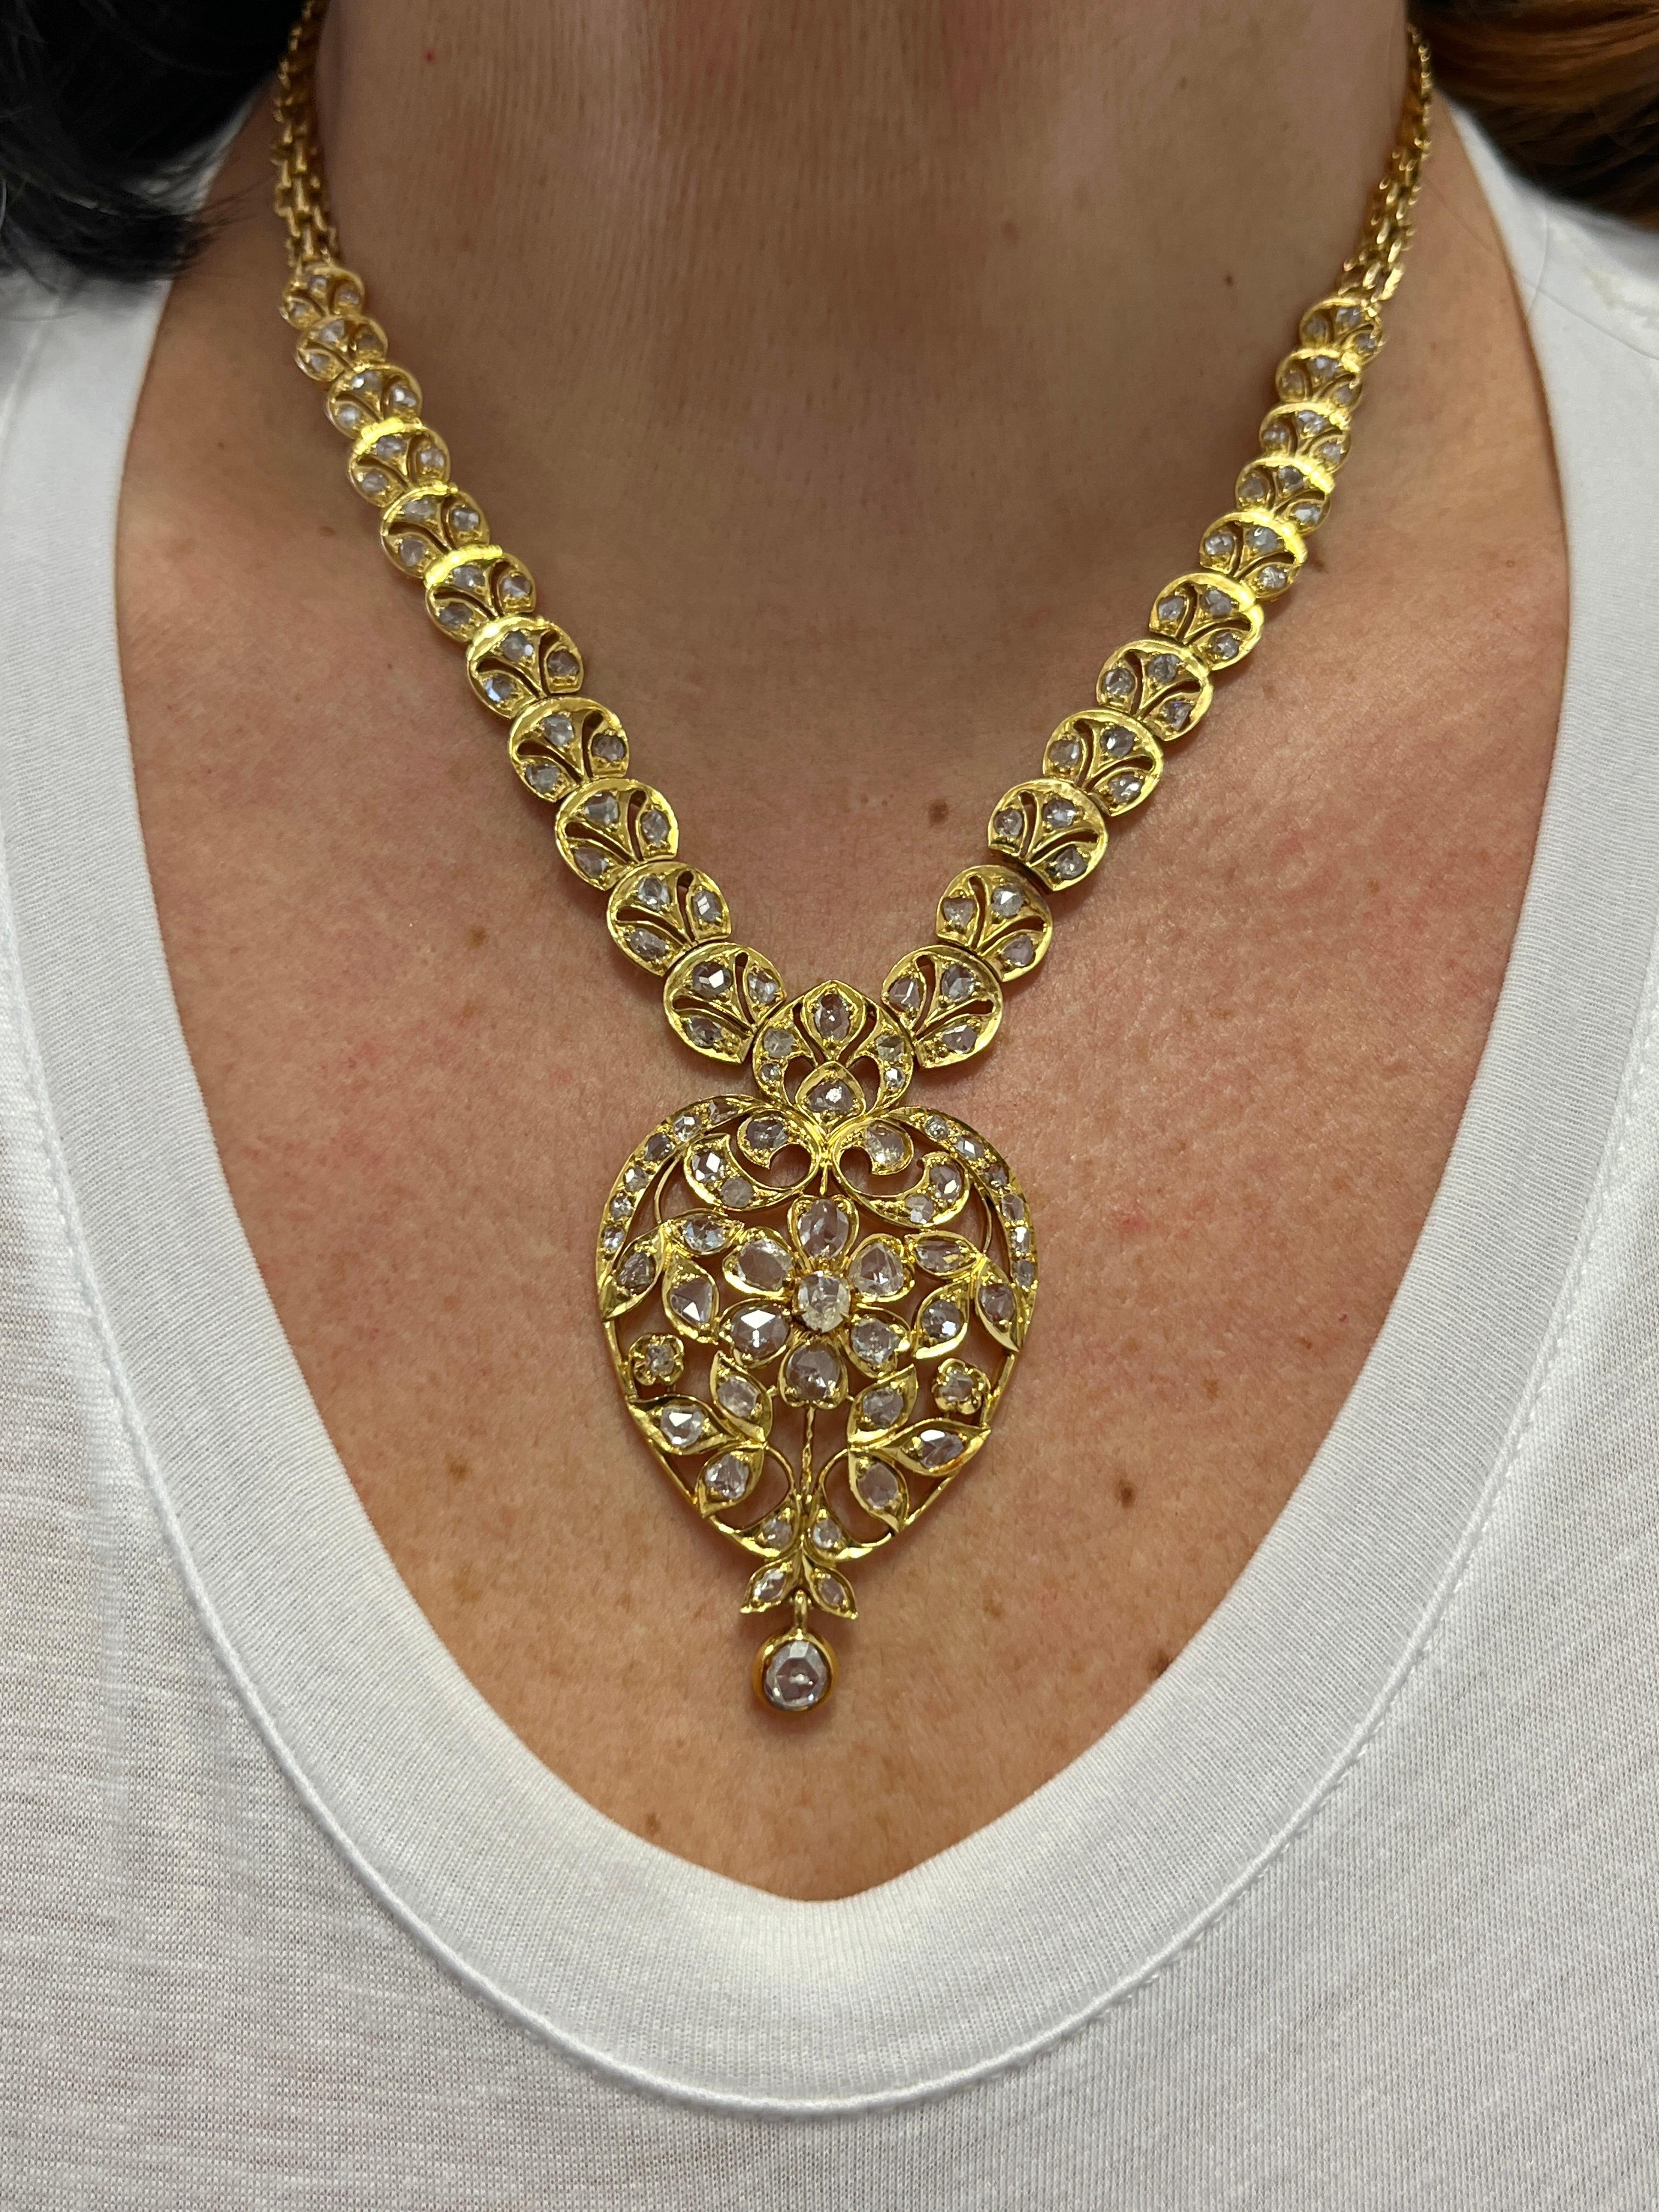 22k gold diamond necklace